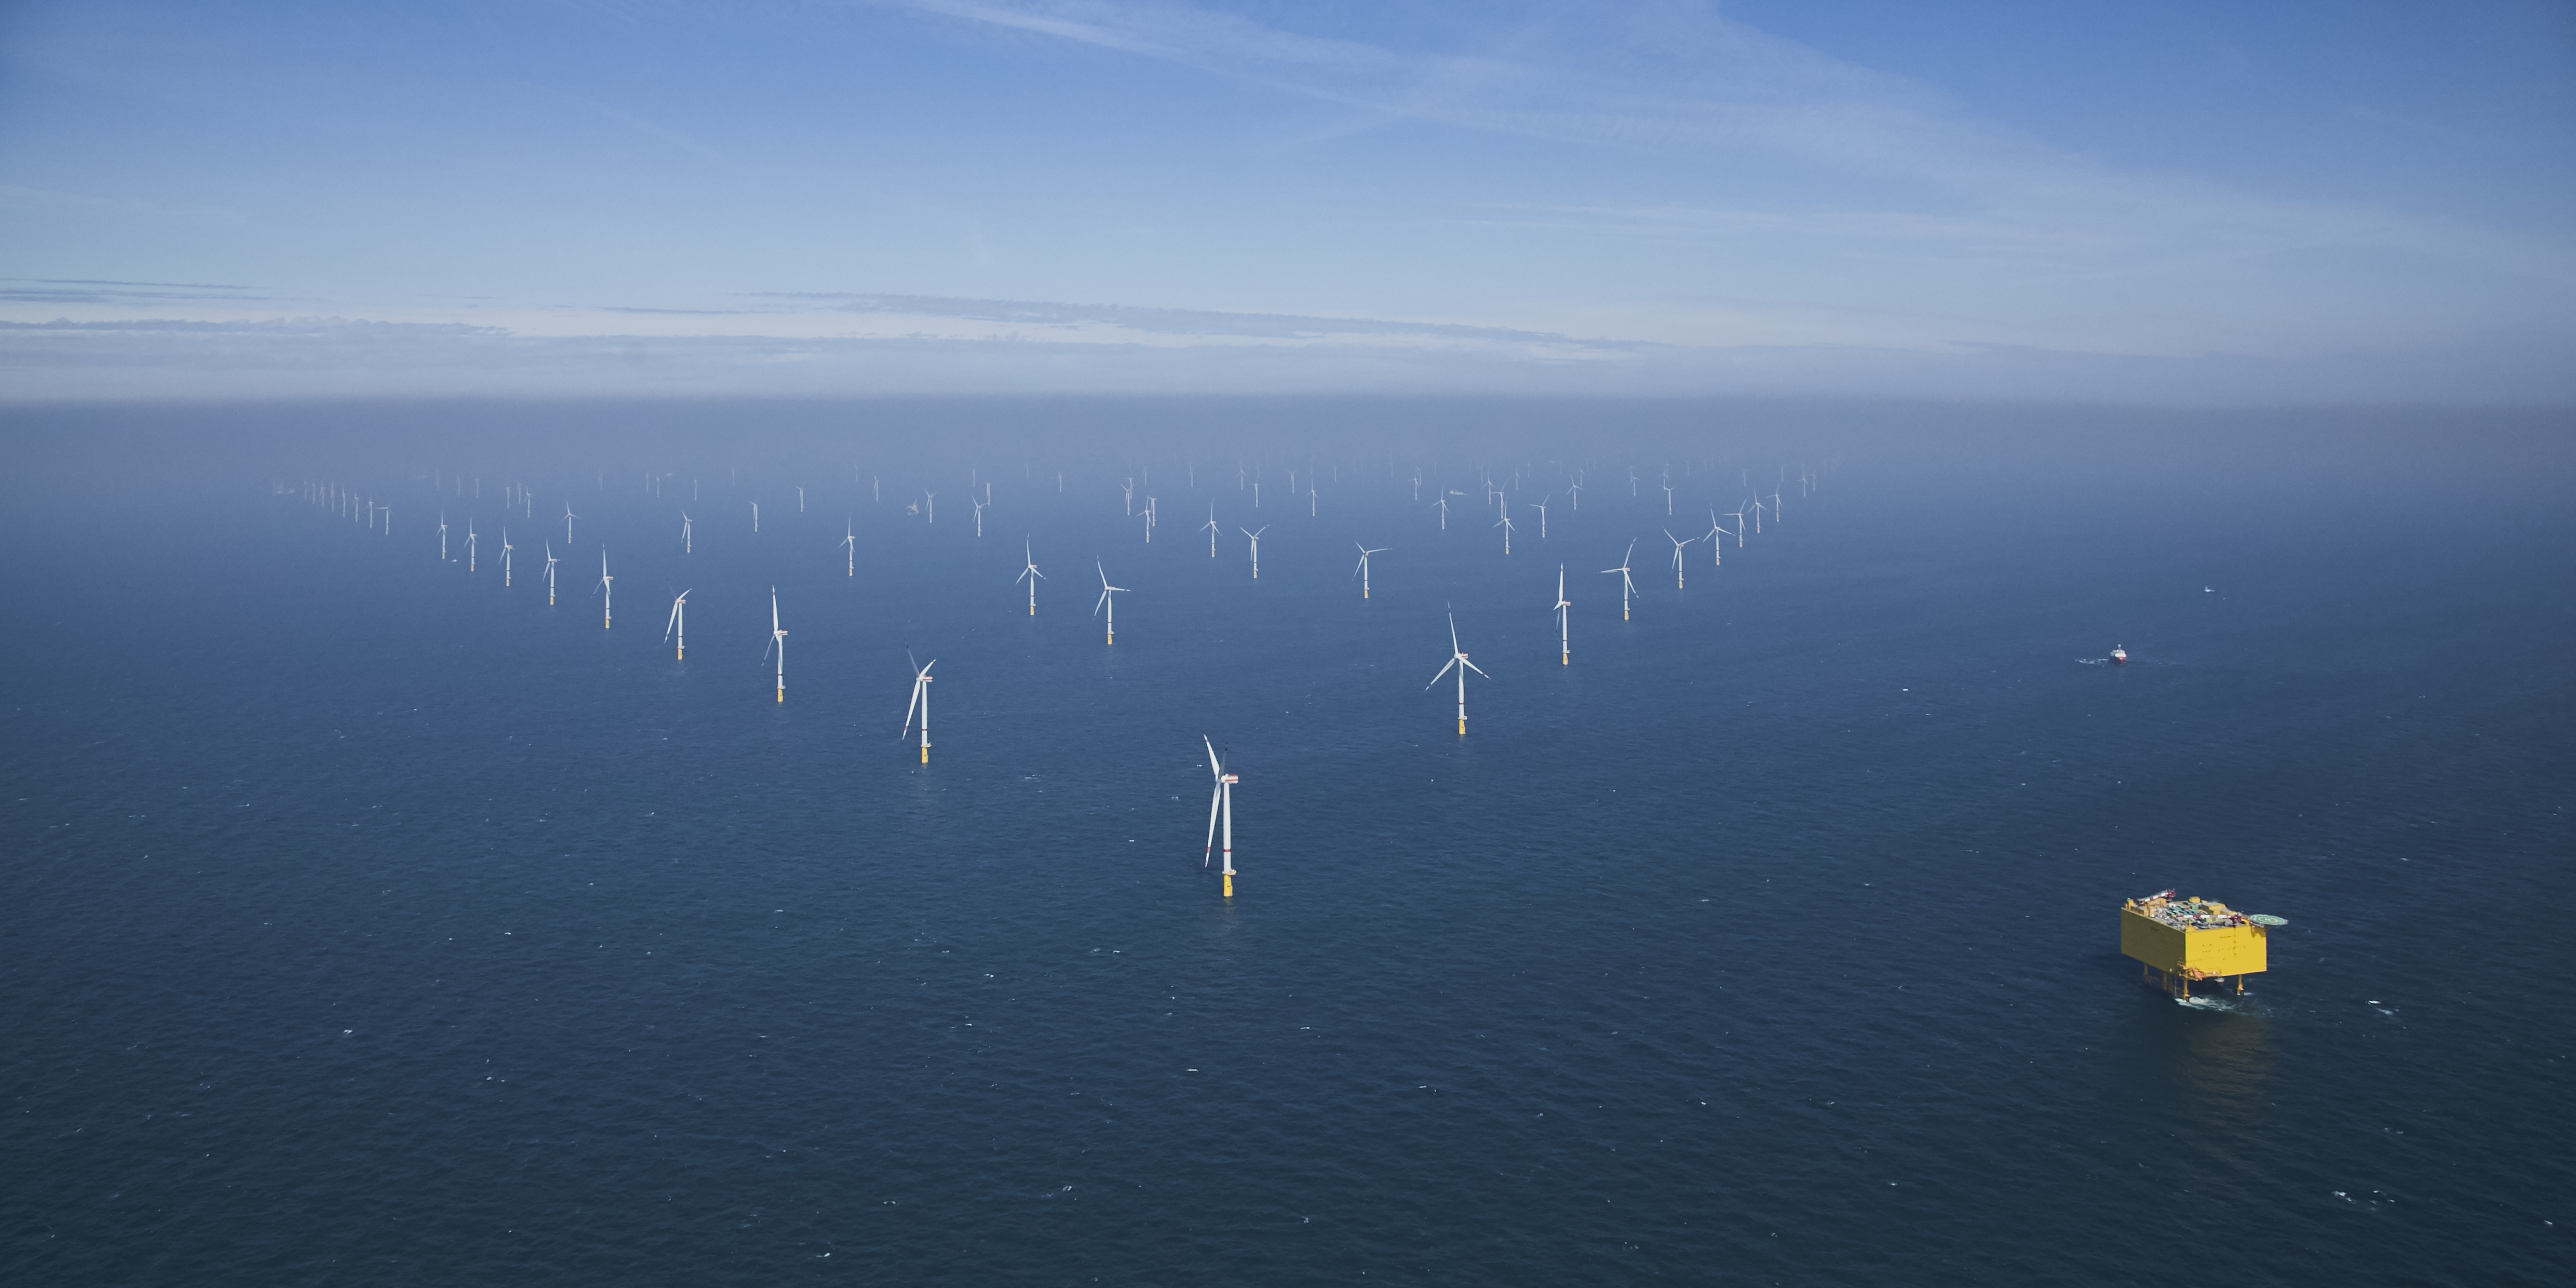 Deutschland könnte mit kombinierter Flächennutzung und größeren Turbinen 82 Gigawatt Offshore-Wind erschließen – Studie